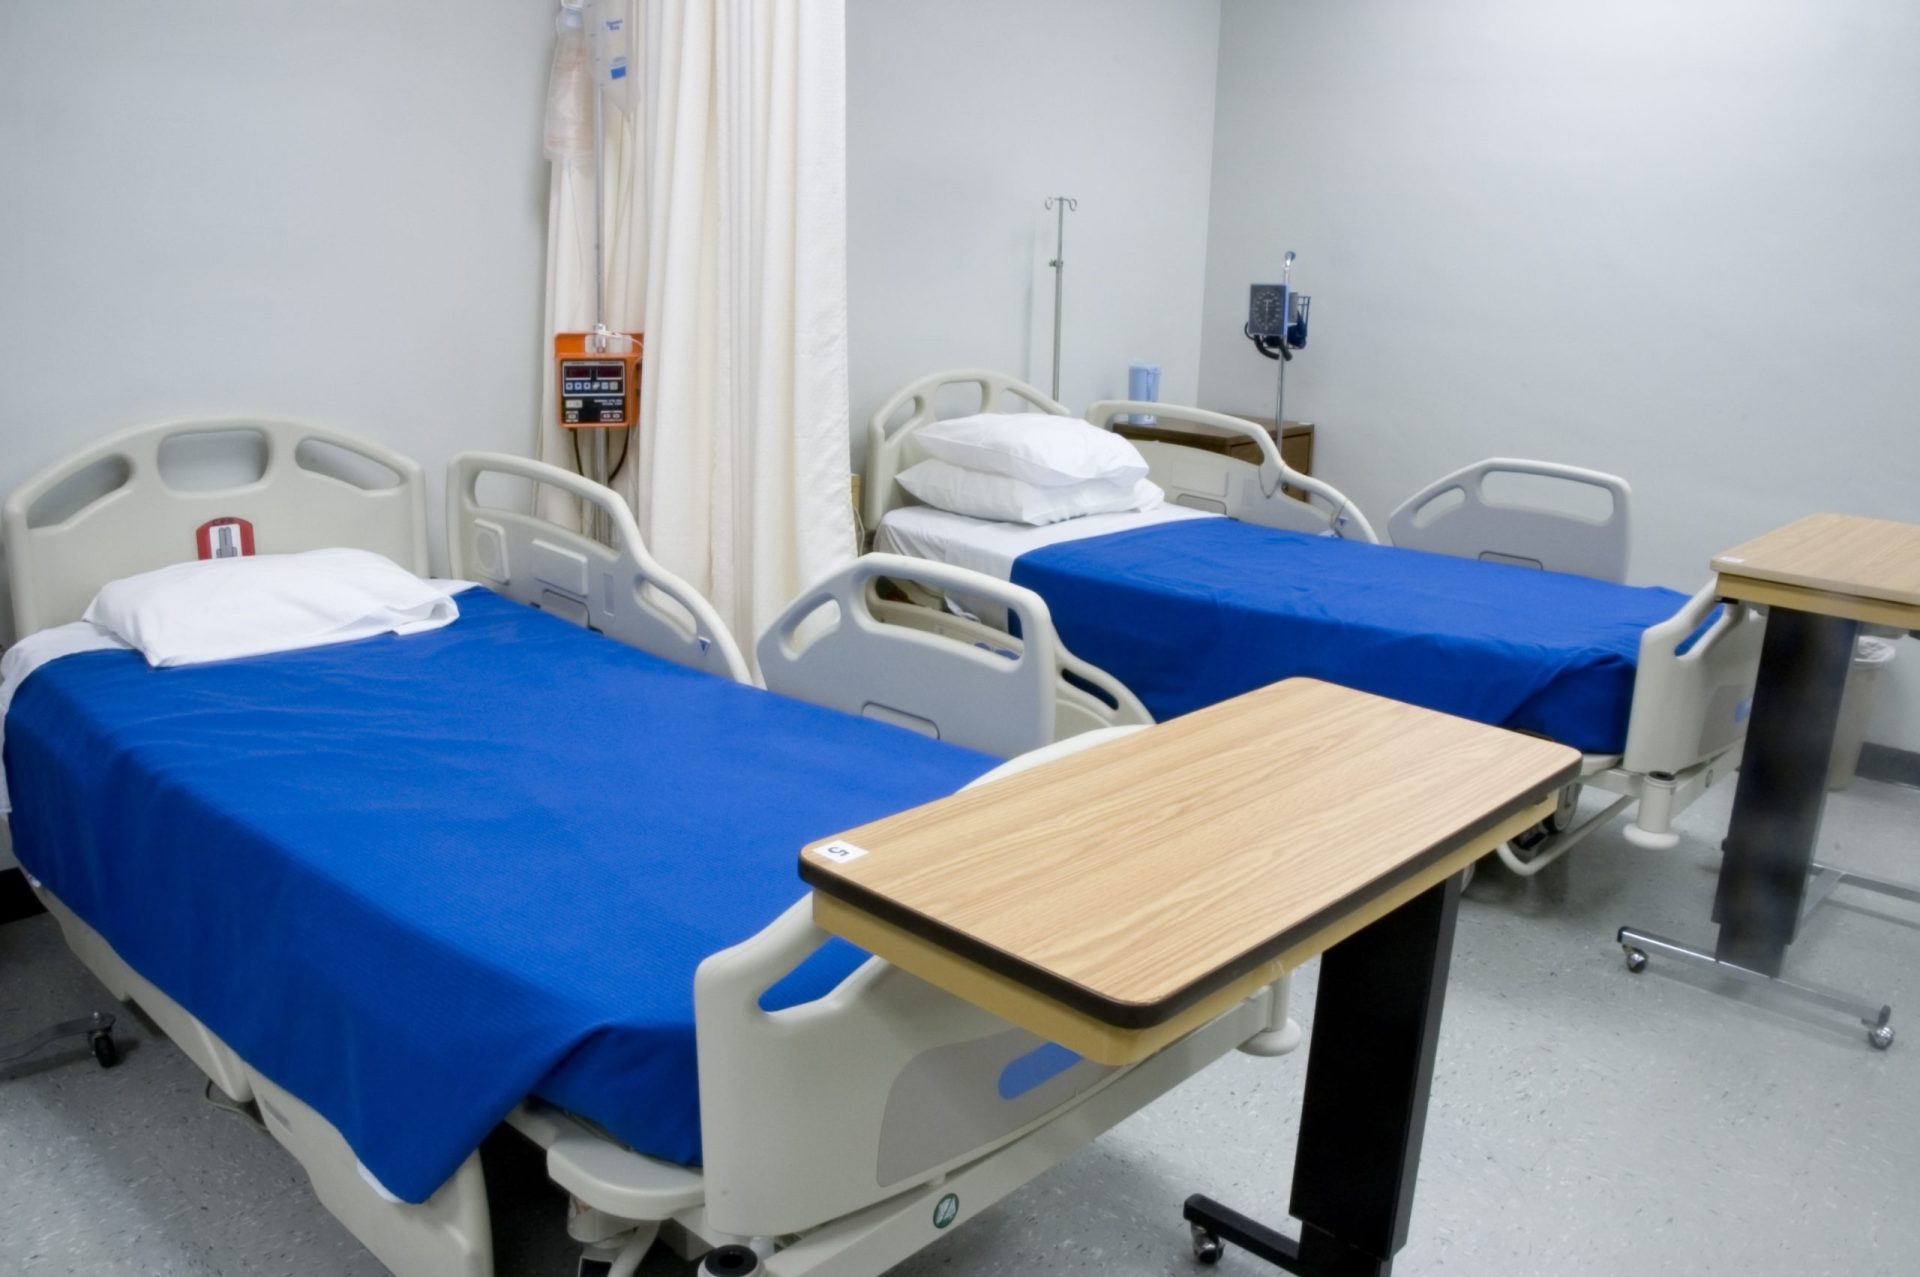 Crise nas urgências obriga a retirar camas a paliativos